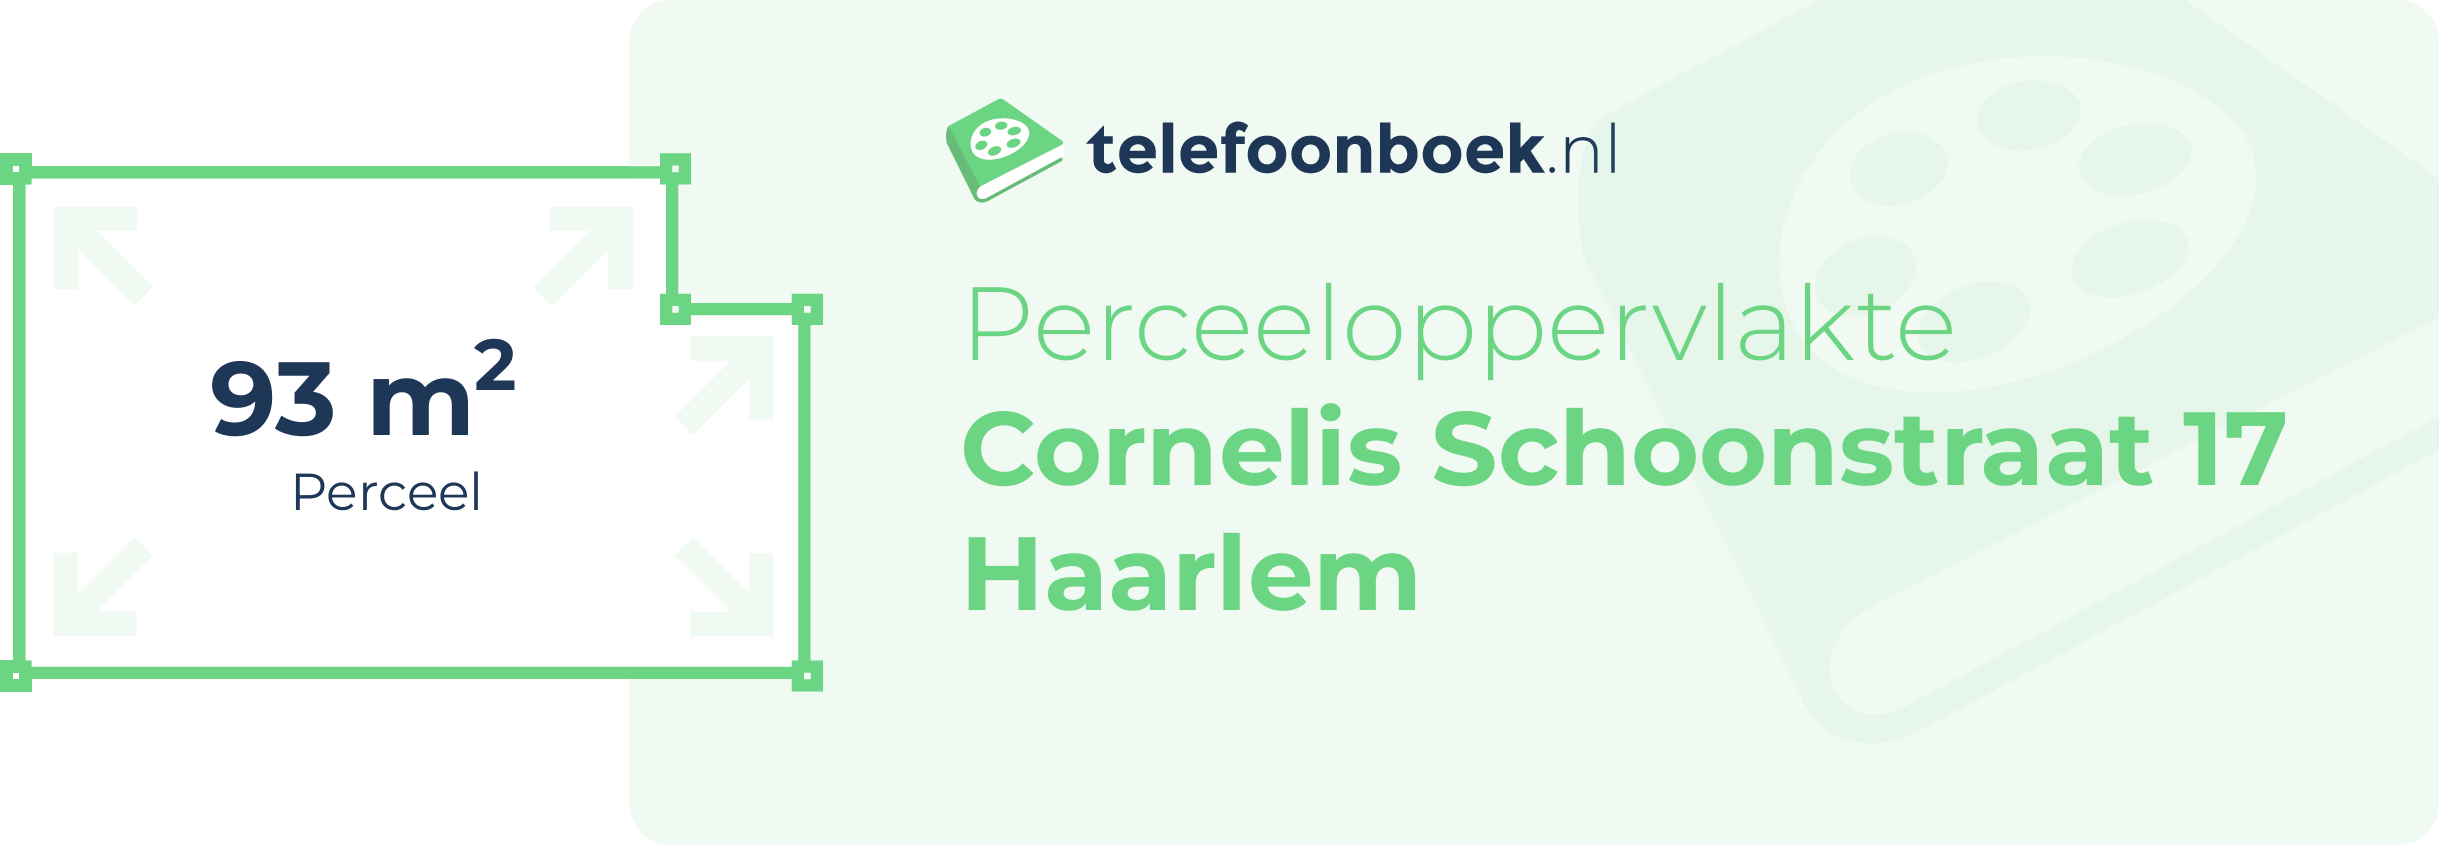 Perceeloppervlakte Cornelis Schoonstraat 17 Haarlem